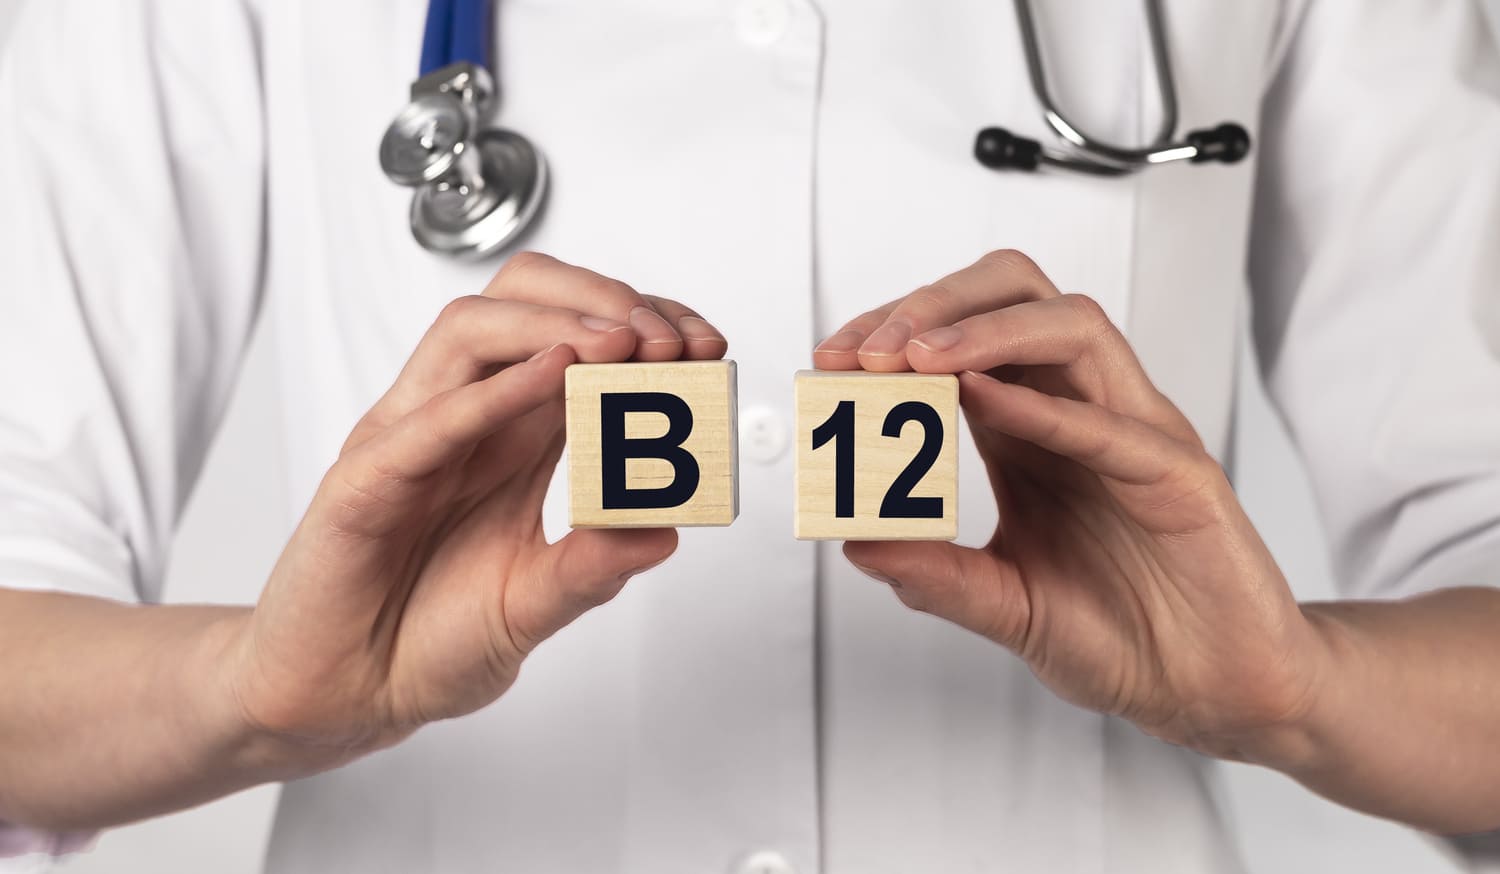 Vitamin-B12-Überdosierung: Was passiert wirklich bei zu viel Vitamin B12?